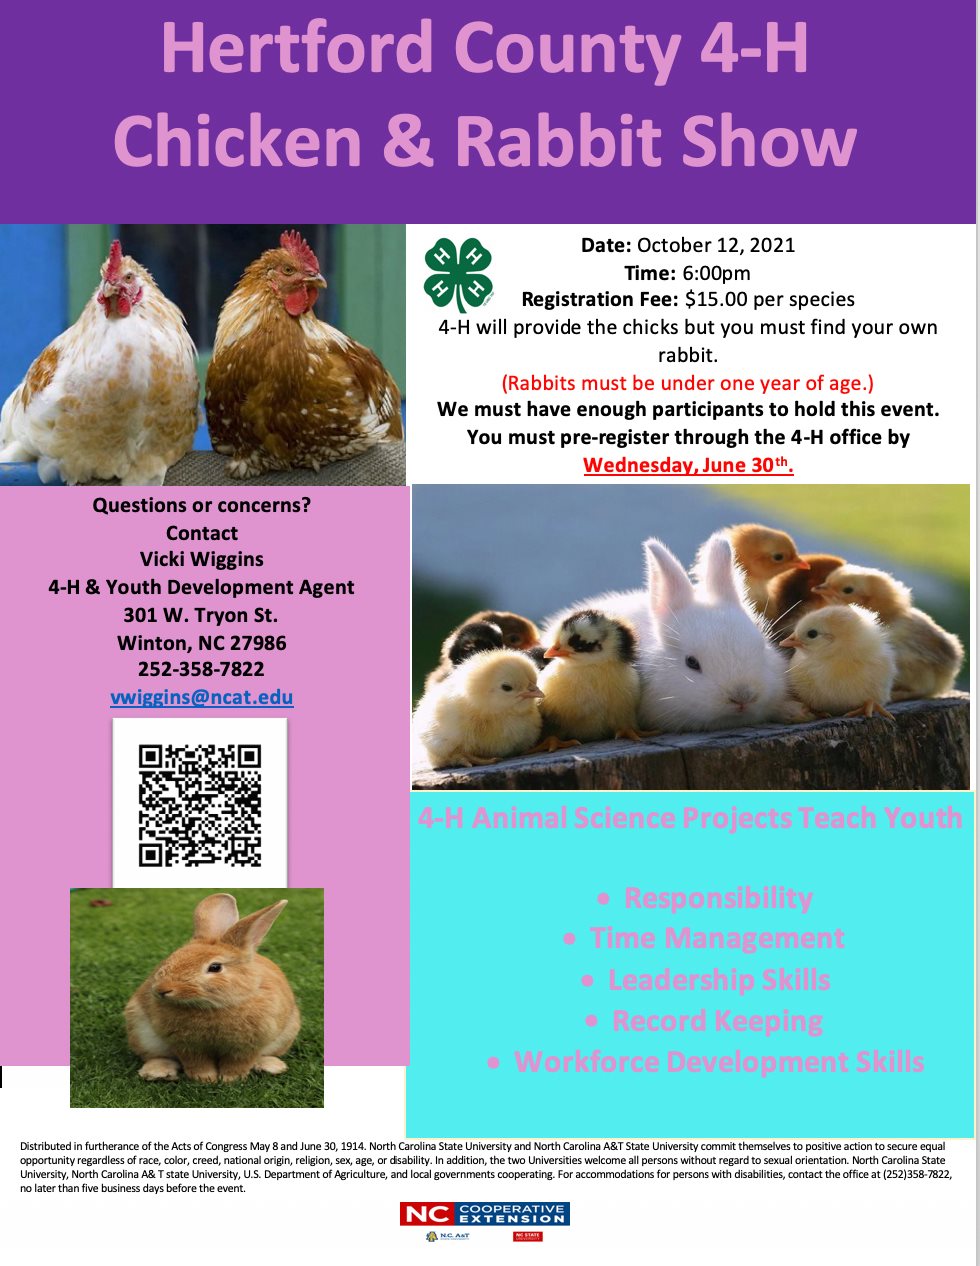 Chicken & Rabbit Show